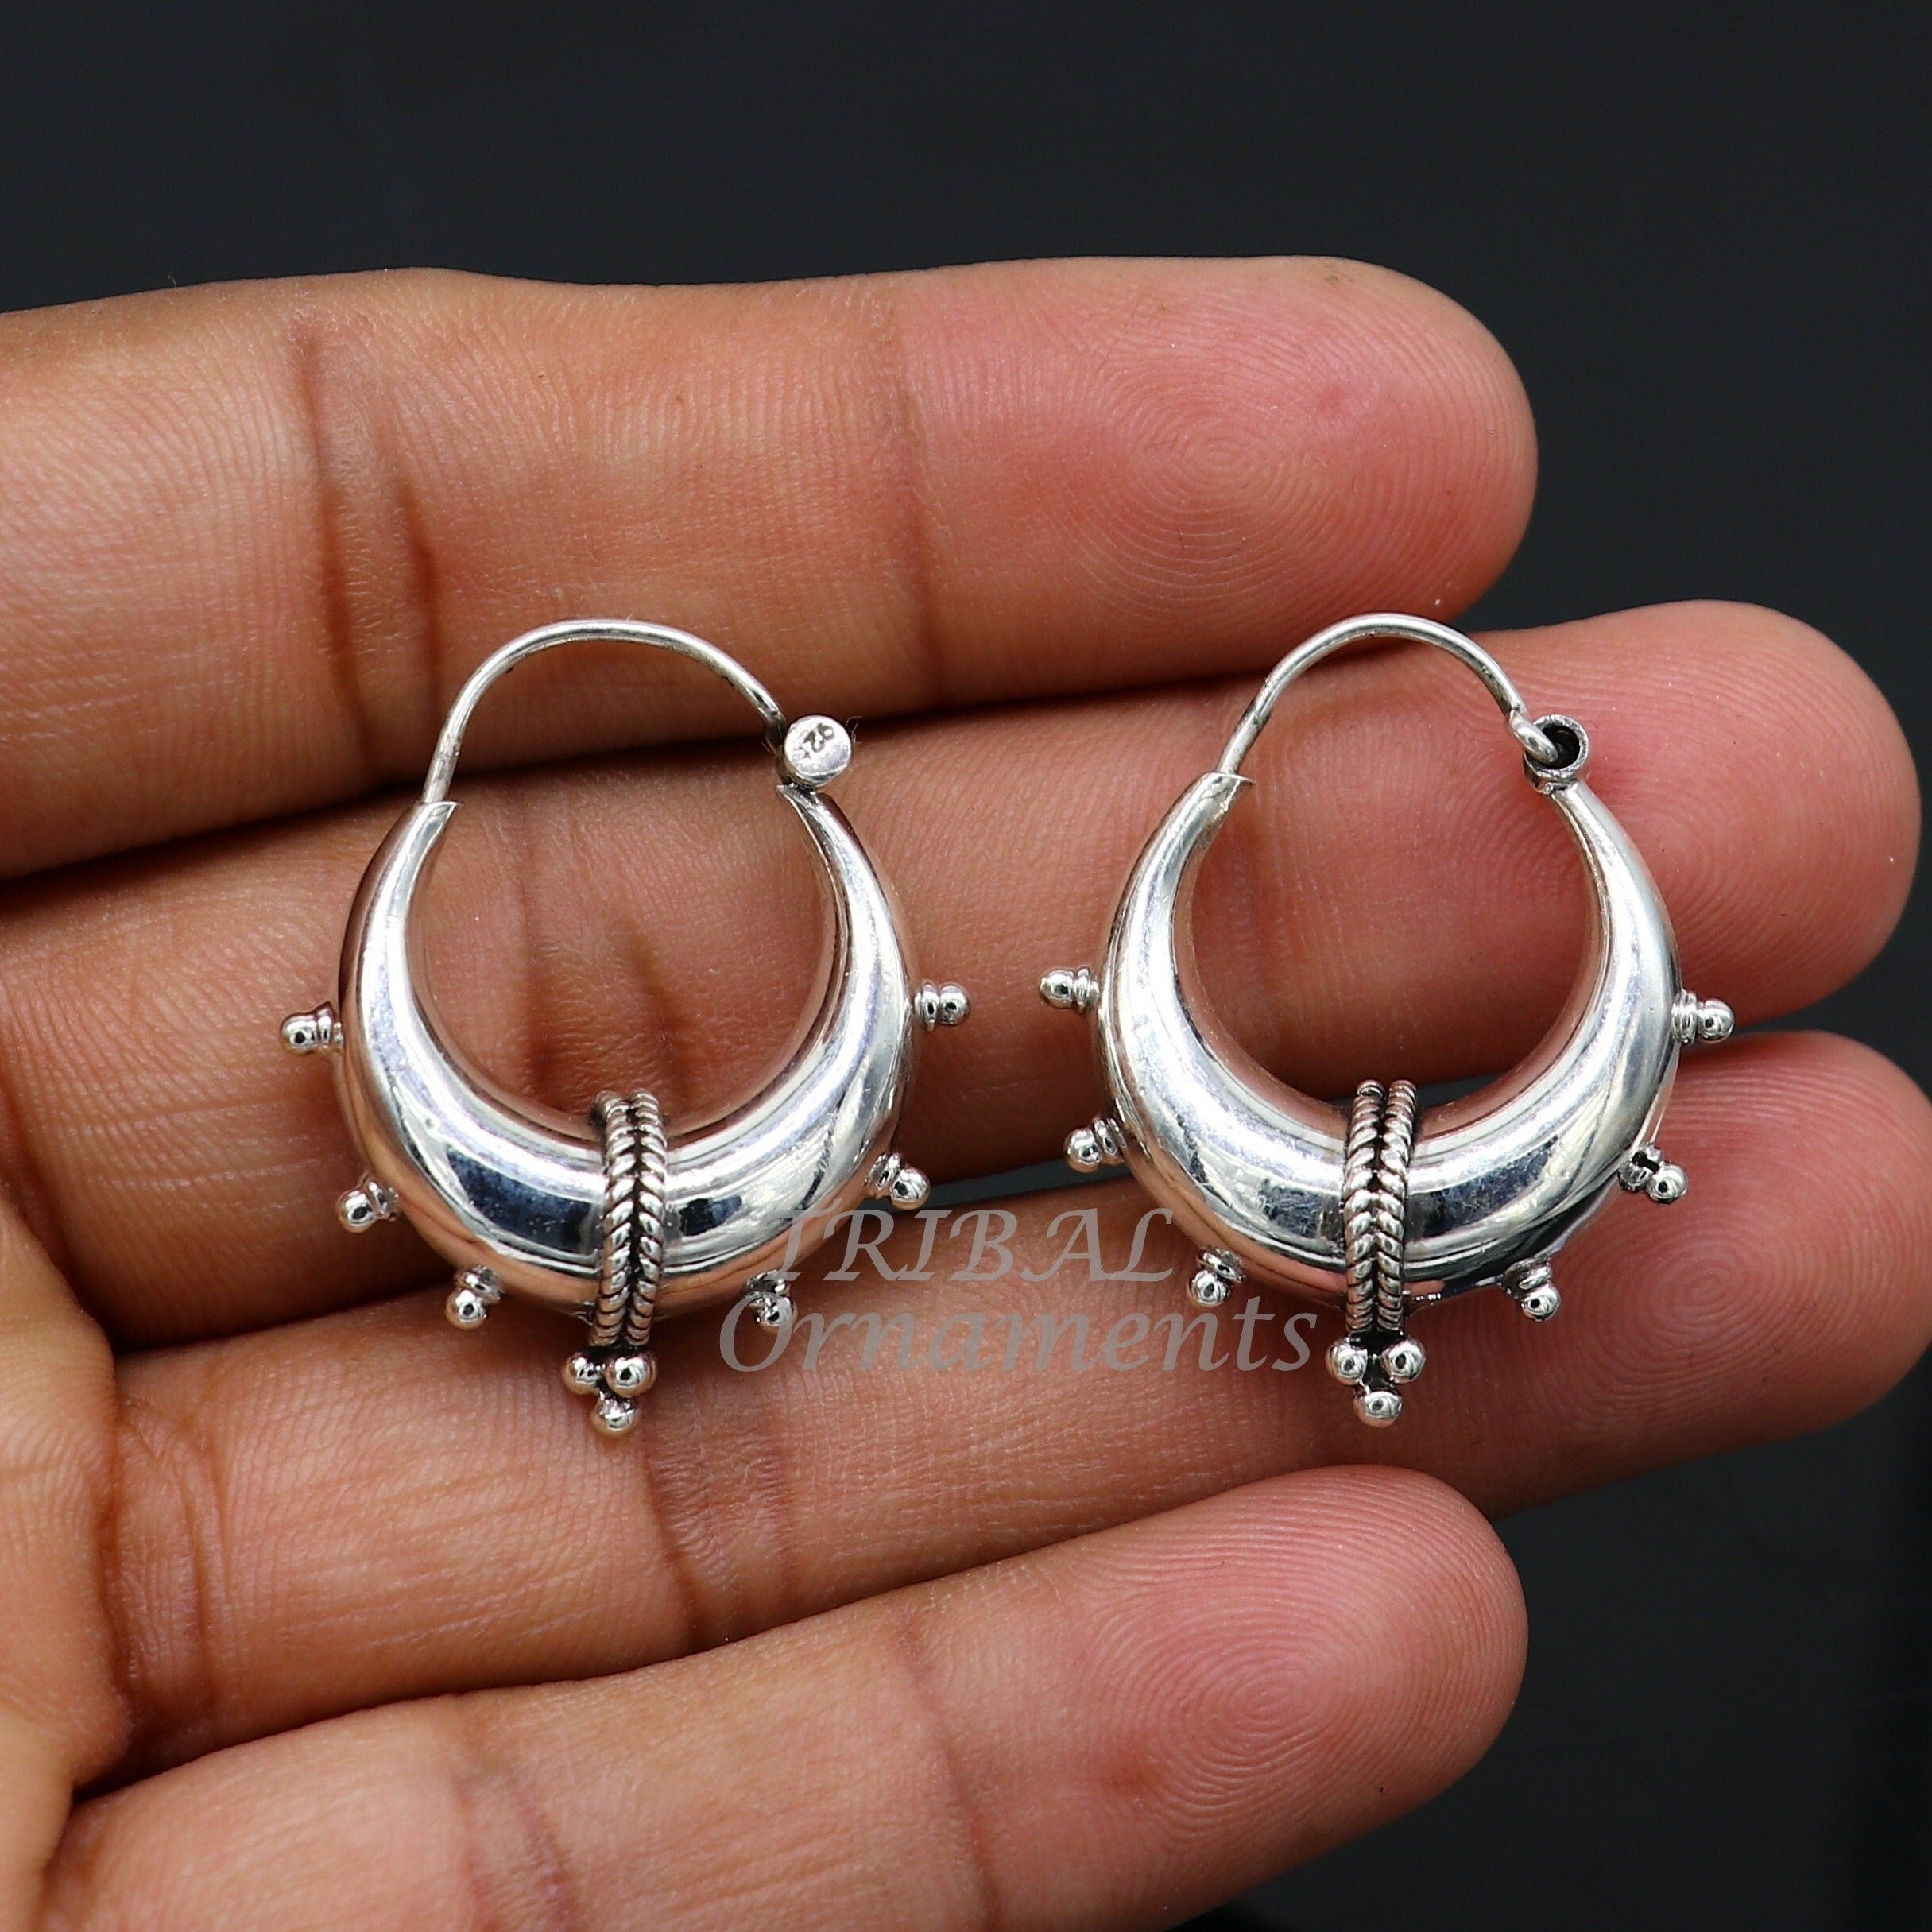 Aggregate more than 69 handmade sterling earrings